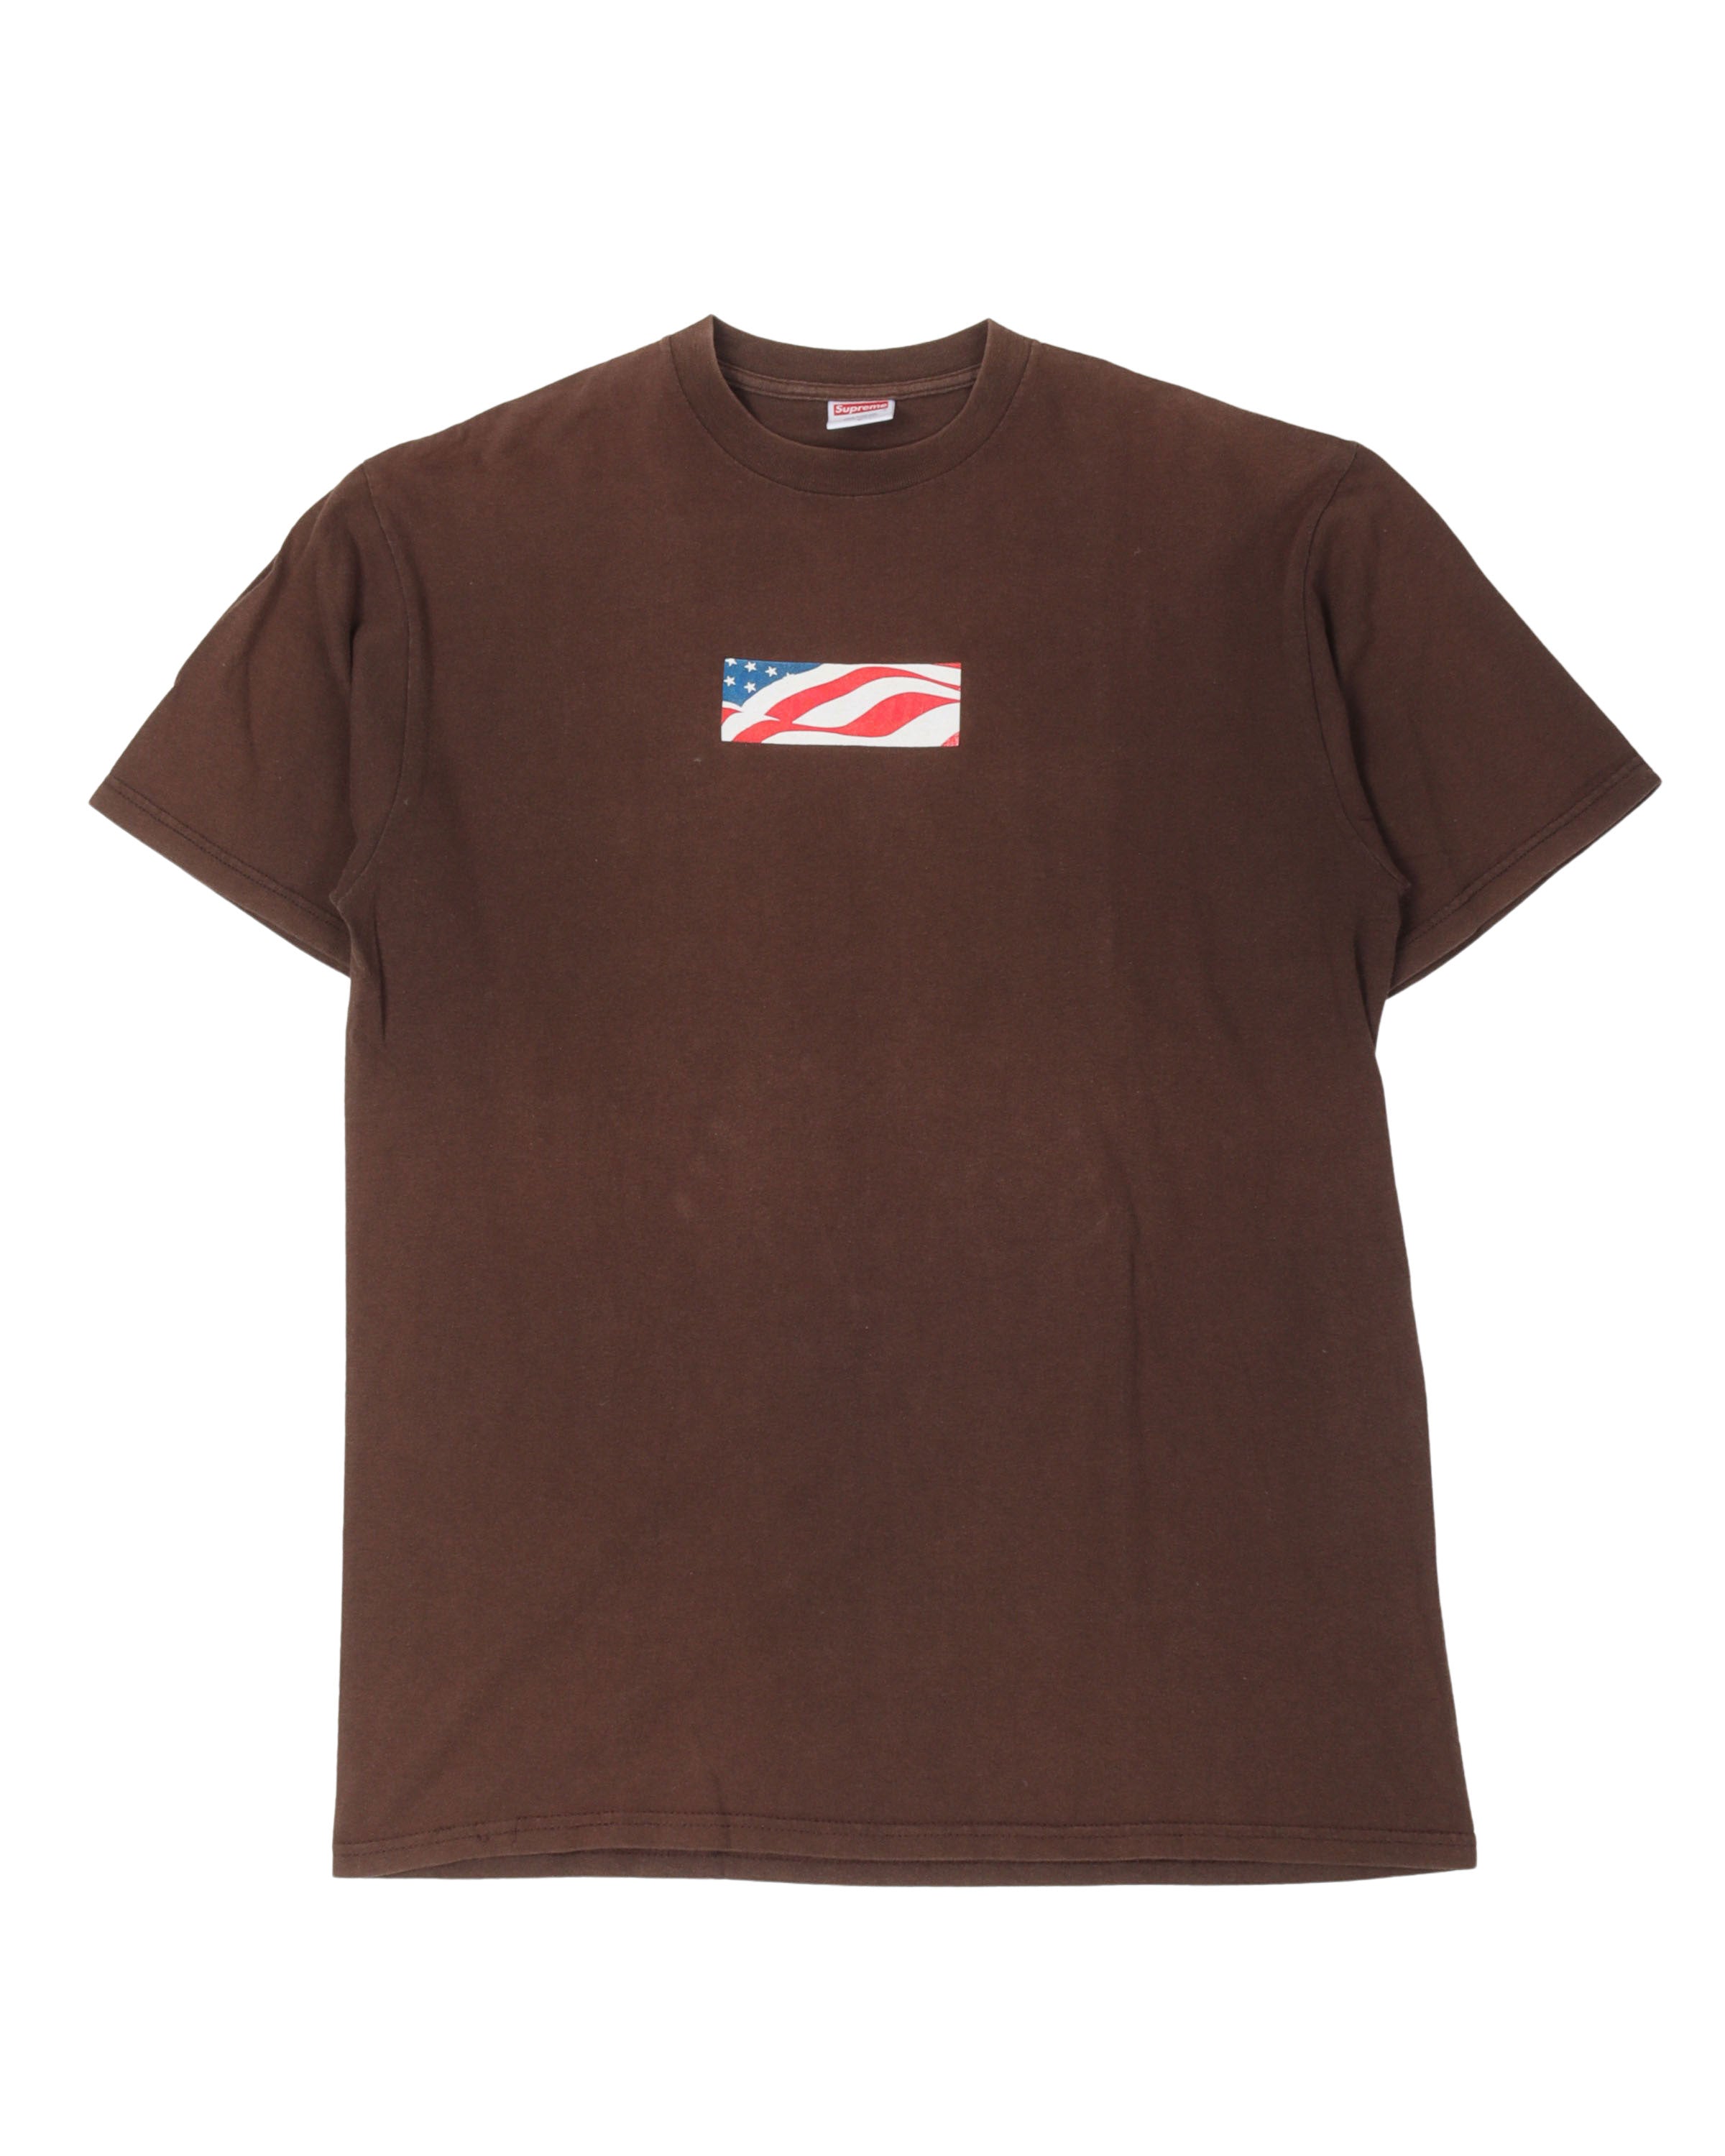 Supreme 2002 9/11 Box Logo T-Shirt